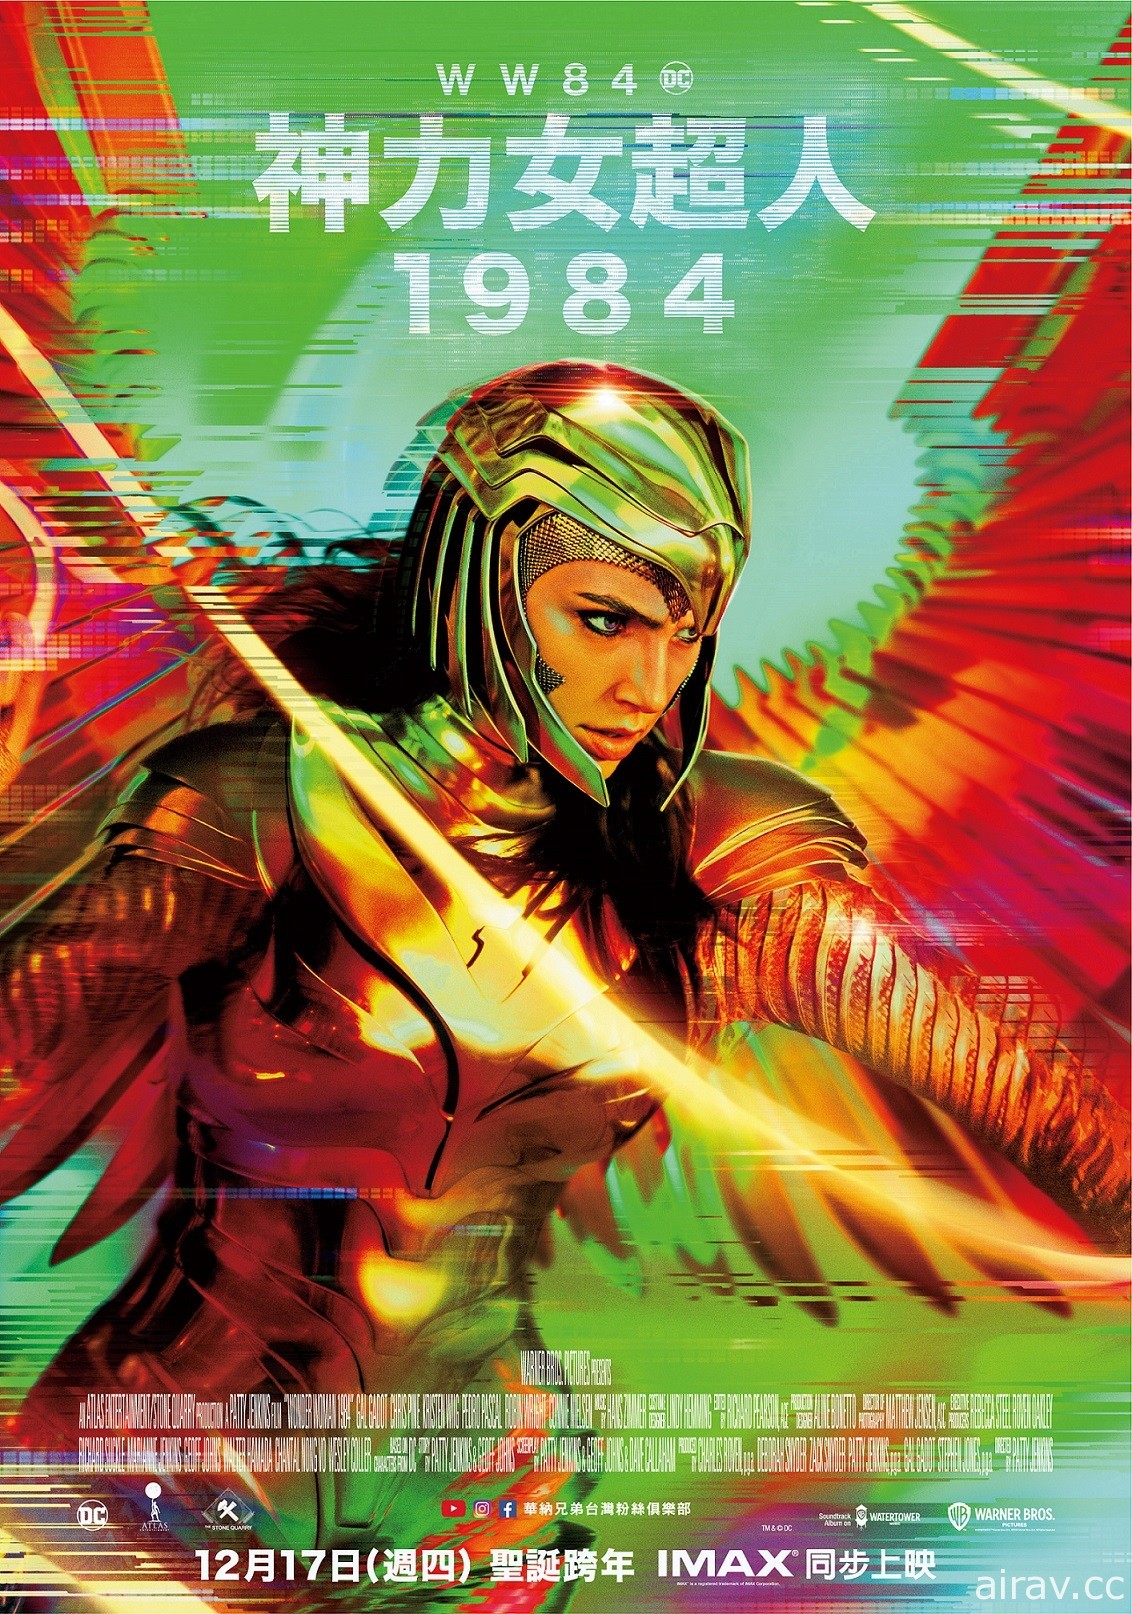 《神力女超人 1984》釋出 CCXP 特別影片